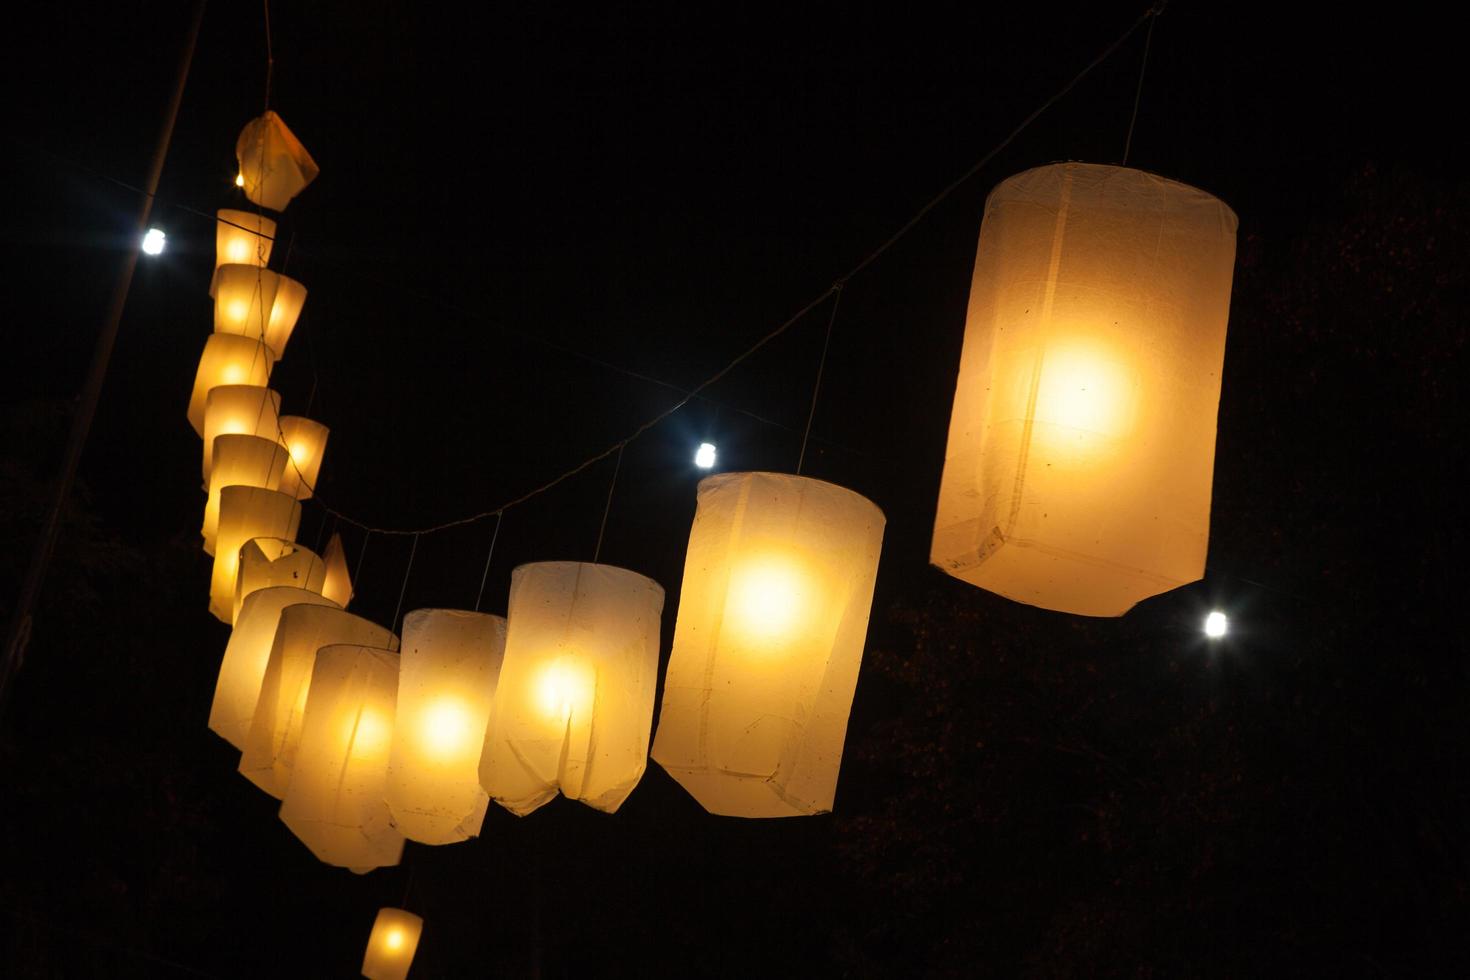 Lanterns at night photo